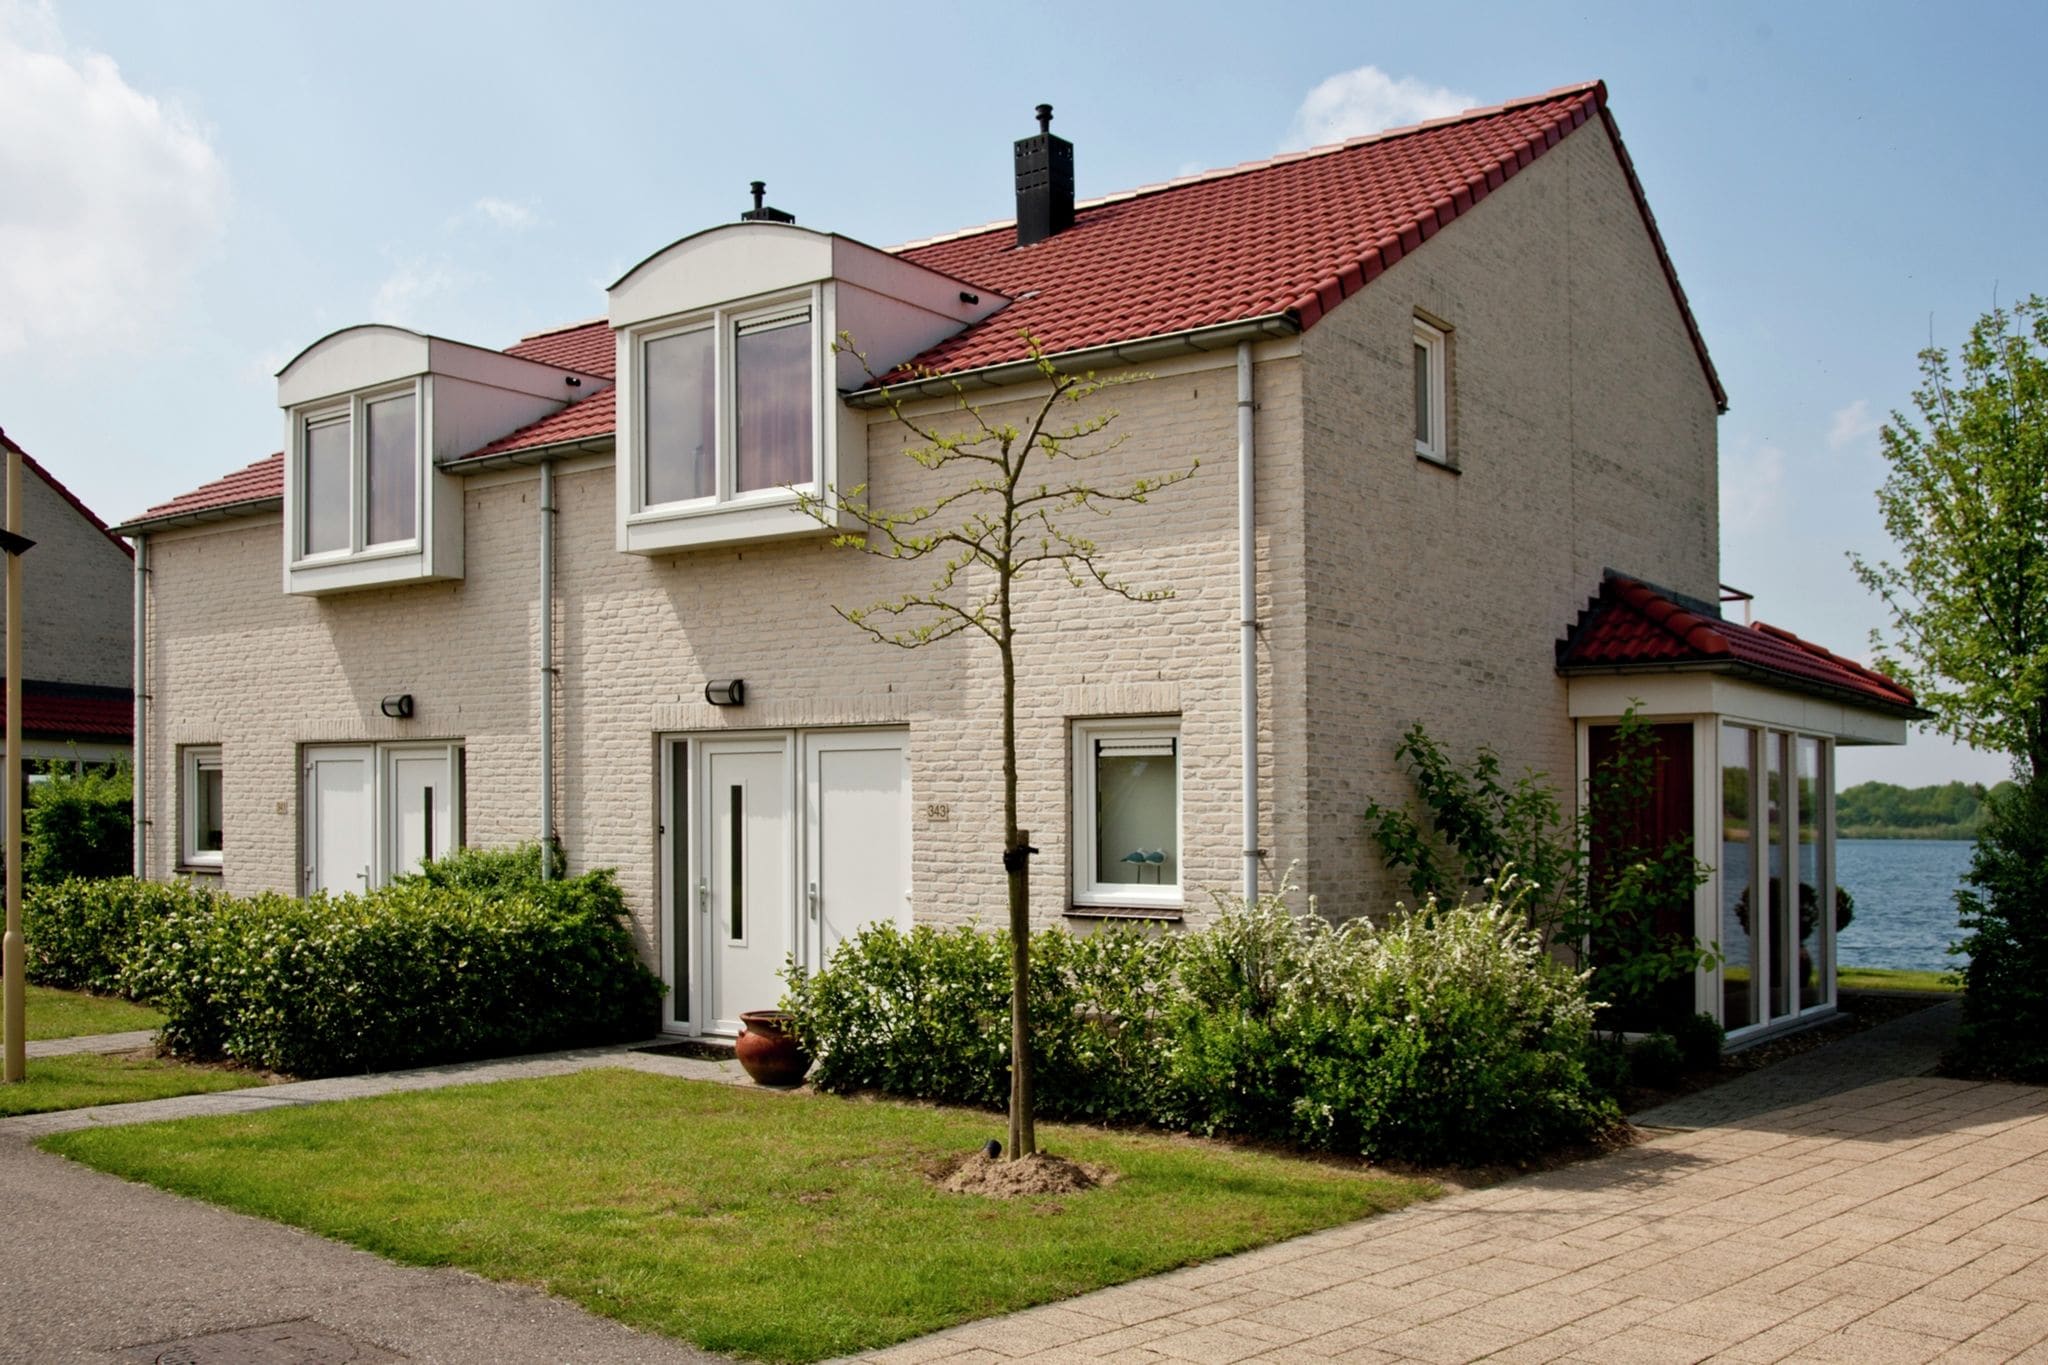 Huis met tuin in een vakantiepark in Limburg